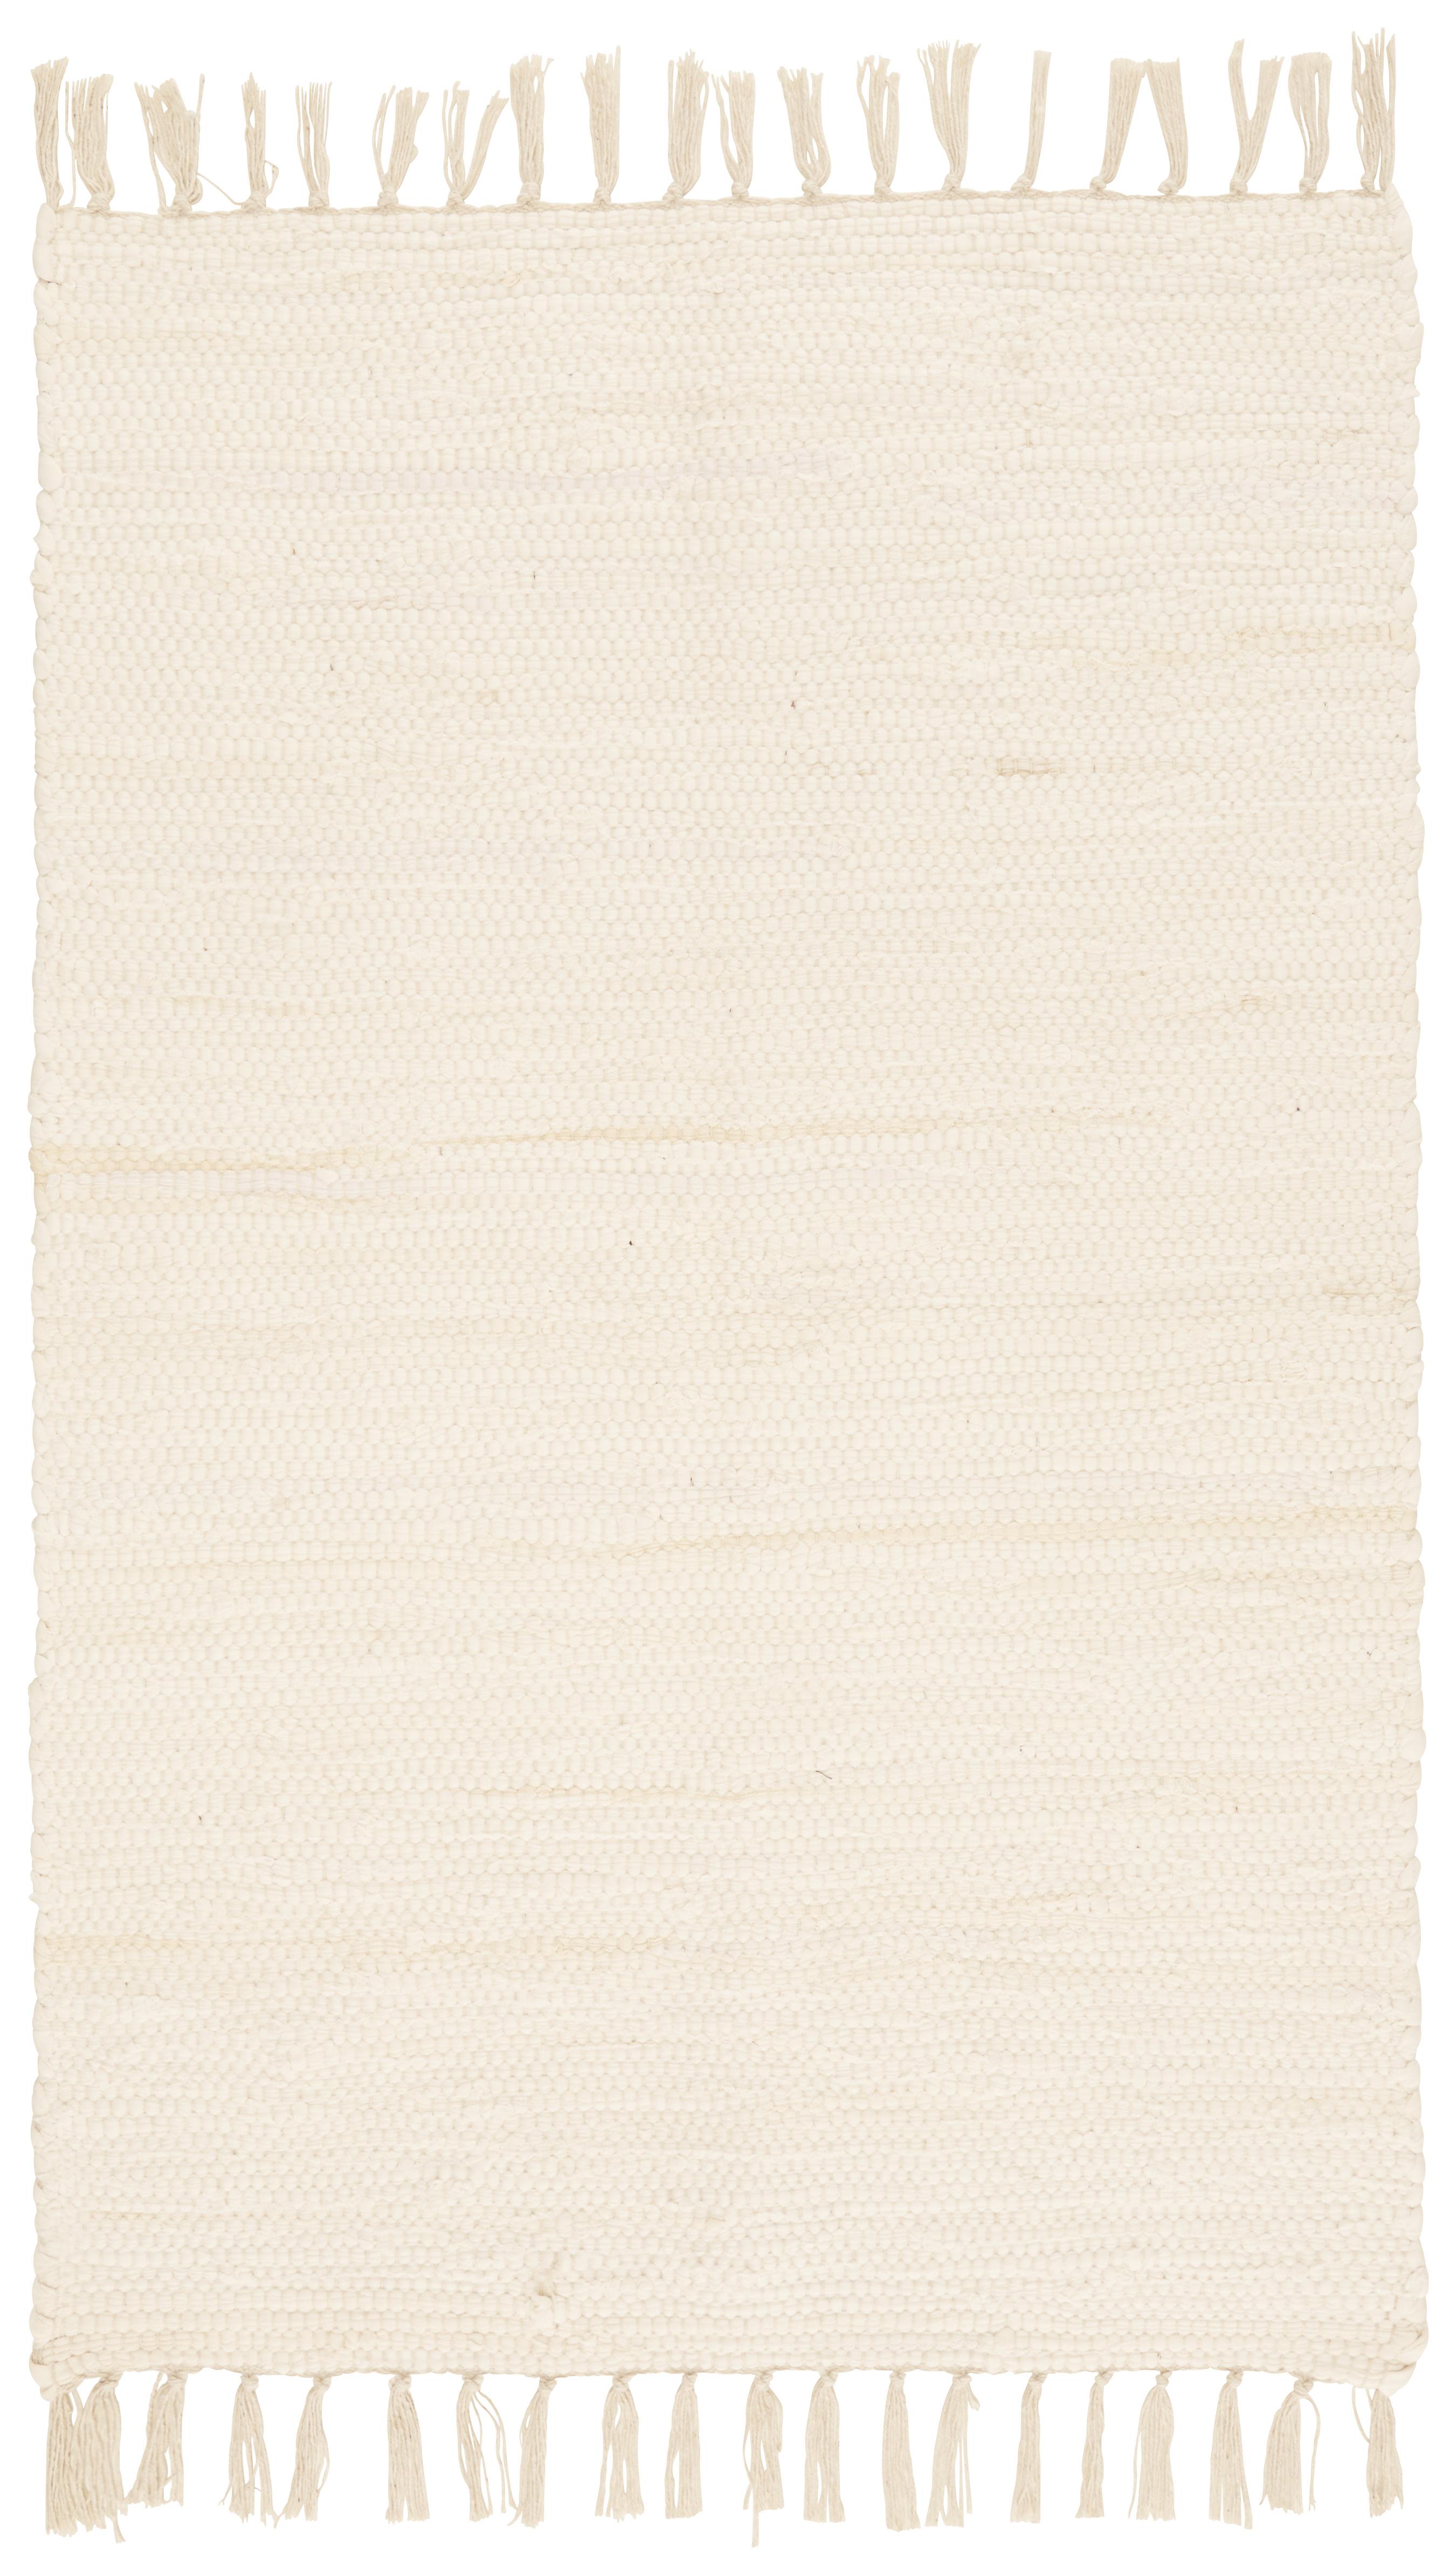 Krpanka Julia 1 - krem barve, Konvencionalno, tekstil (60/90cm) - Modern Living